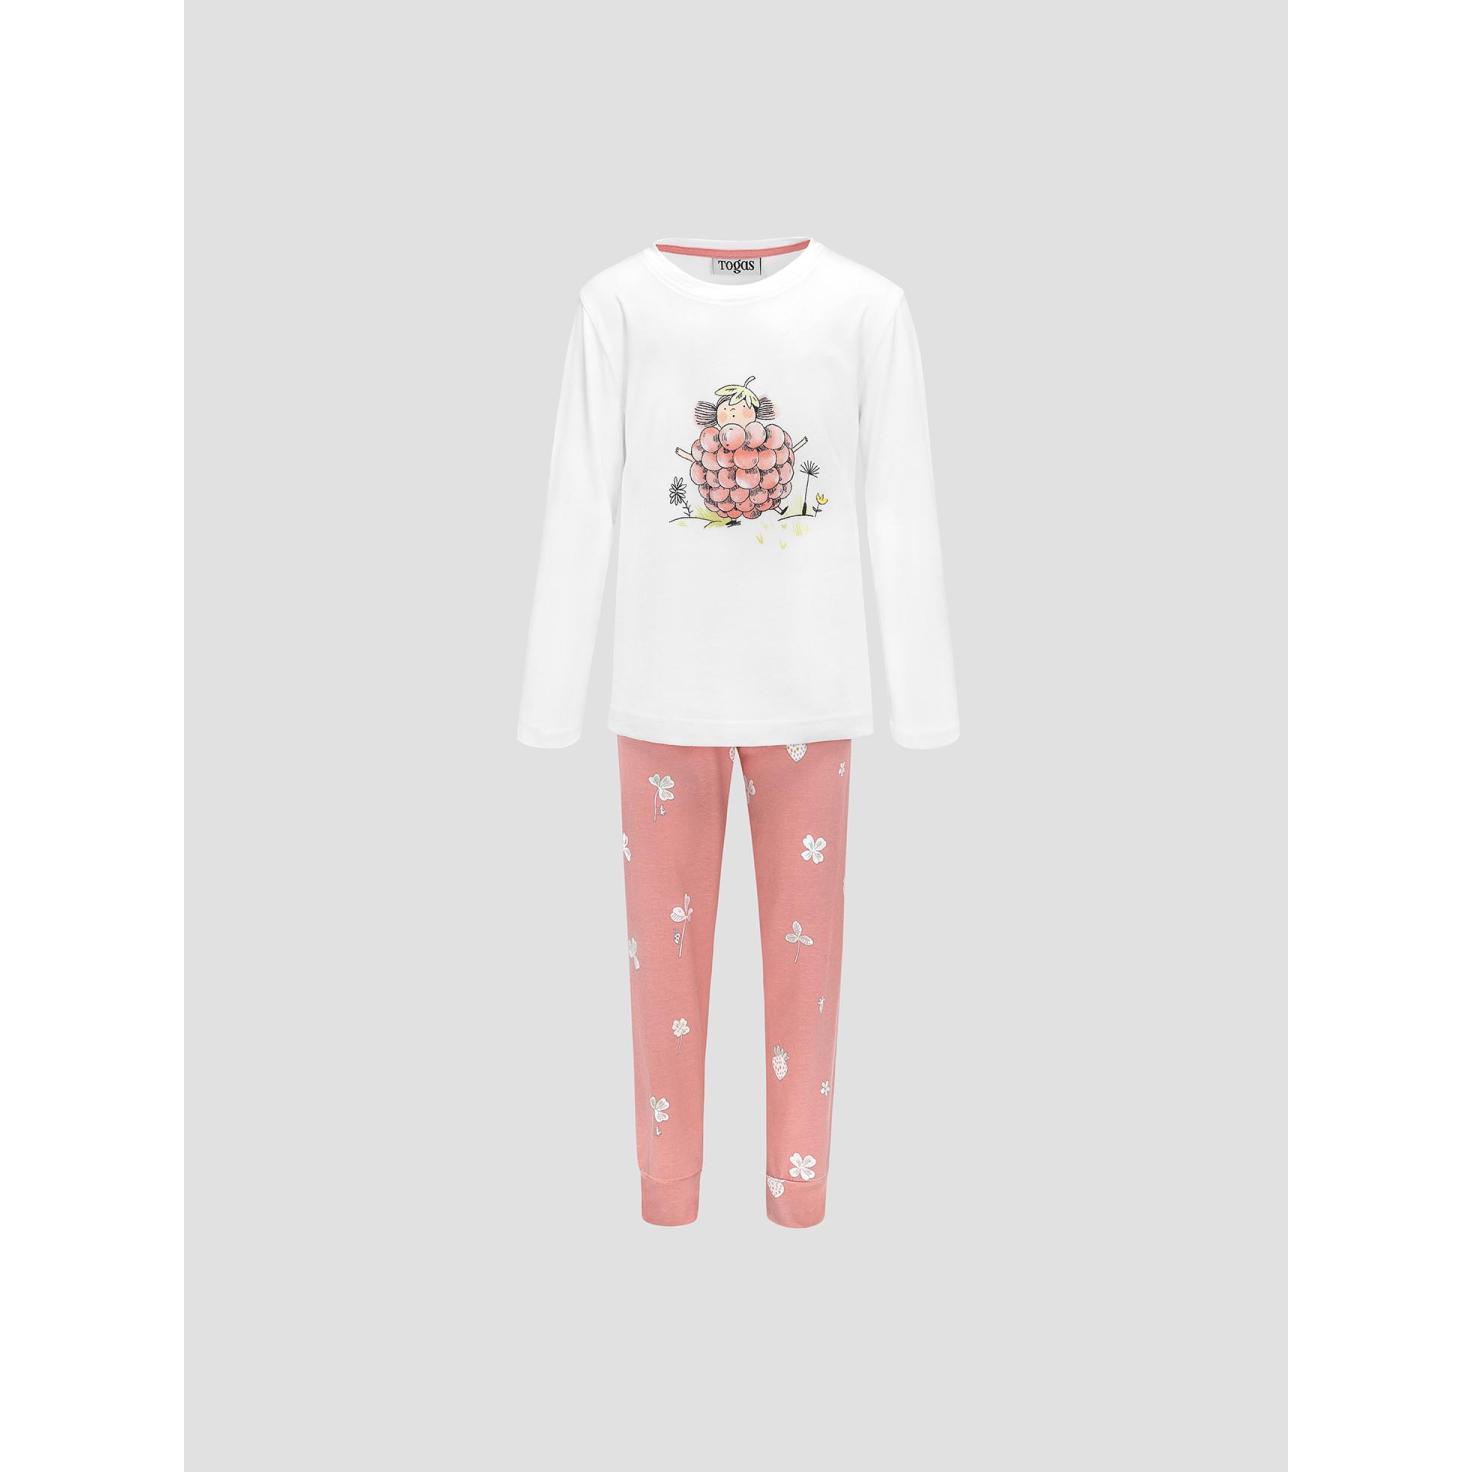 Пижама для девочек Kids by togas Стробби бело-розовый 116-122 см жен пижама с шортами инь янь белый р 54